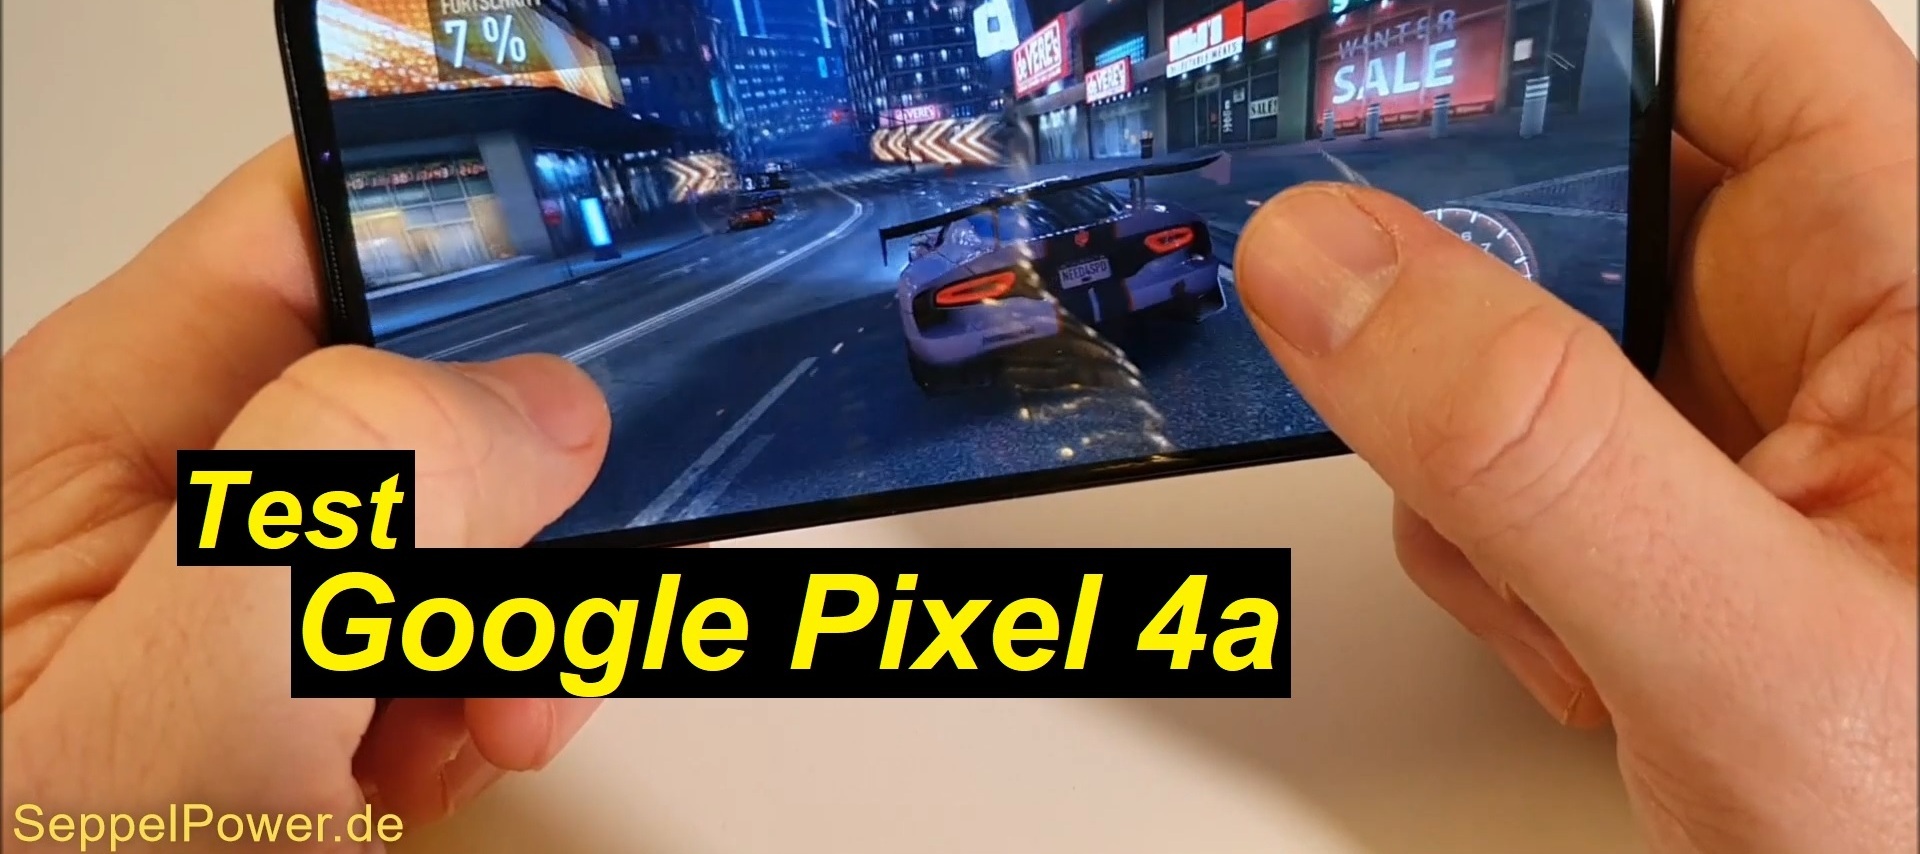 Das Google Pixel 4a ausführlich getestet